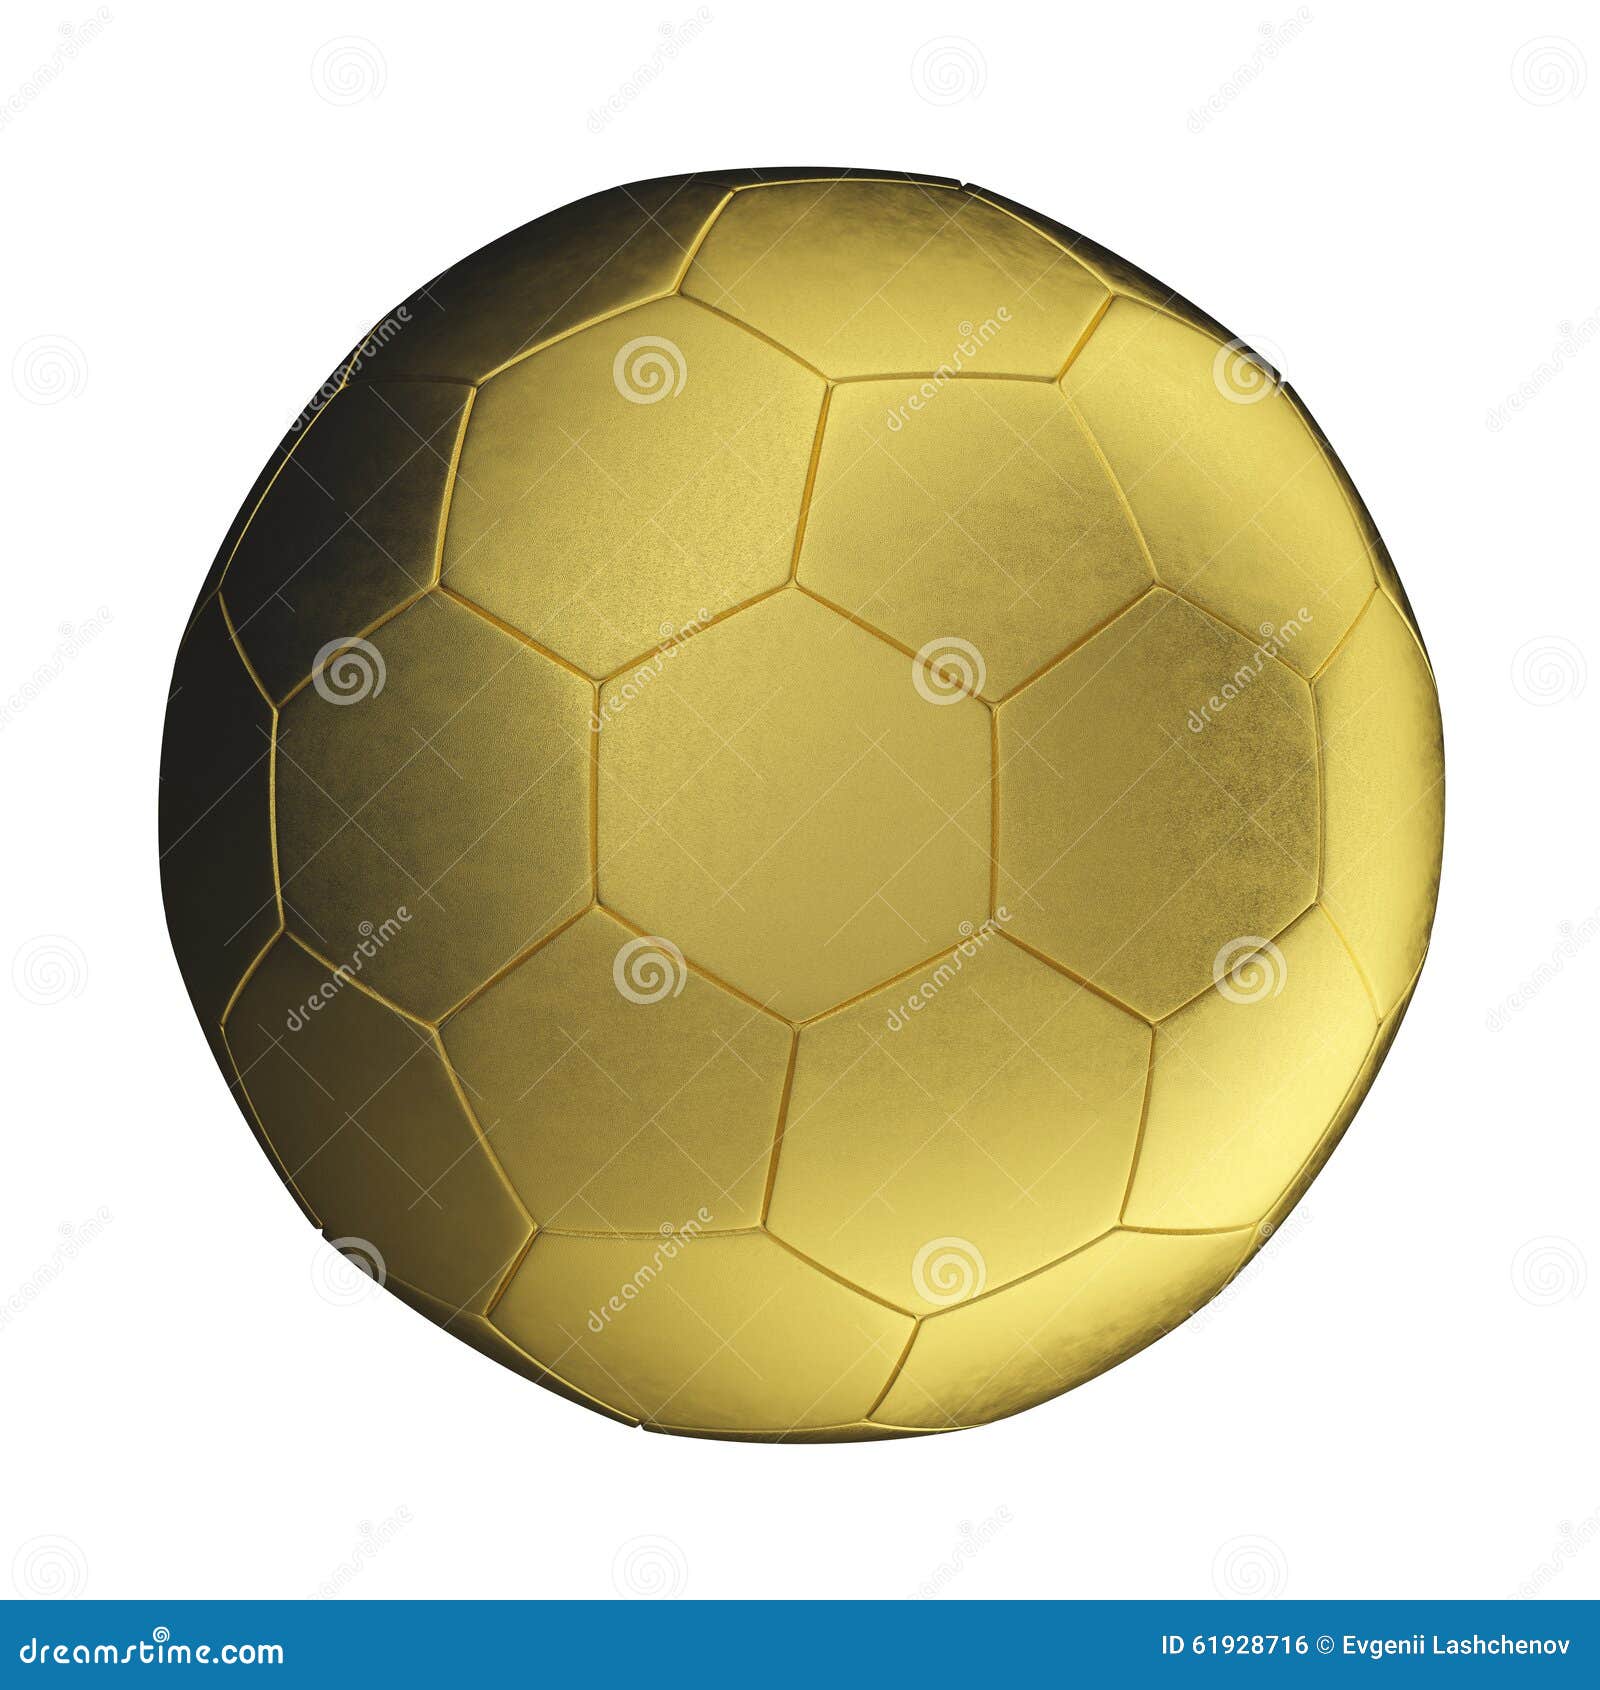 Golden soccer ball stock illustration. Illustration of golden - 61928716